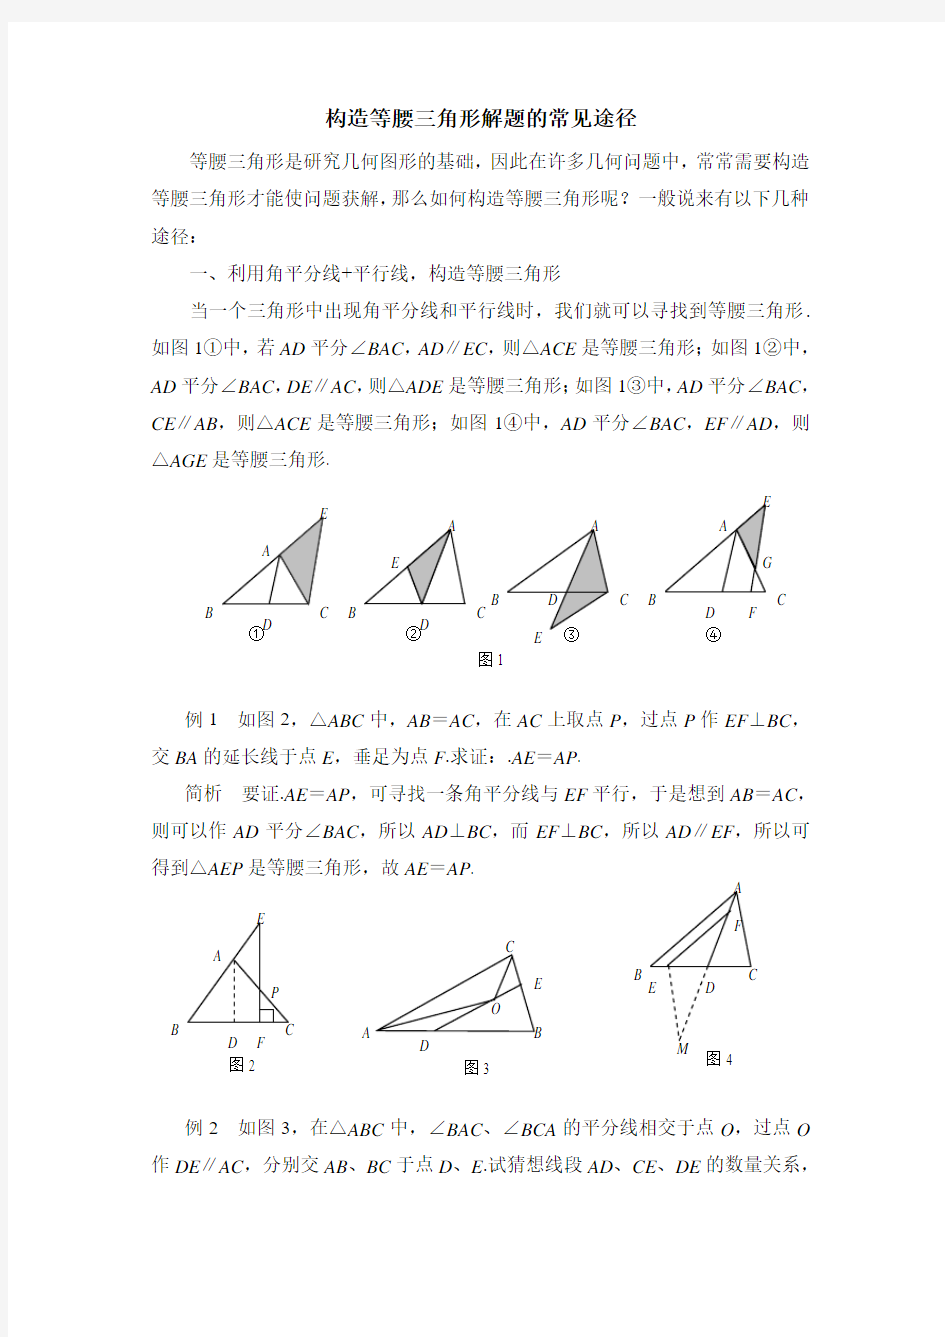 构造等腰三角形解题的常见途径